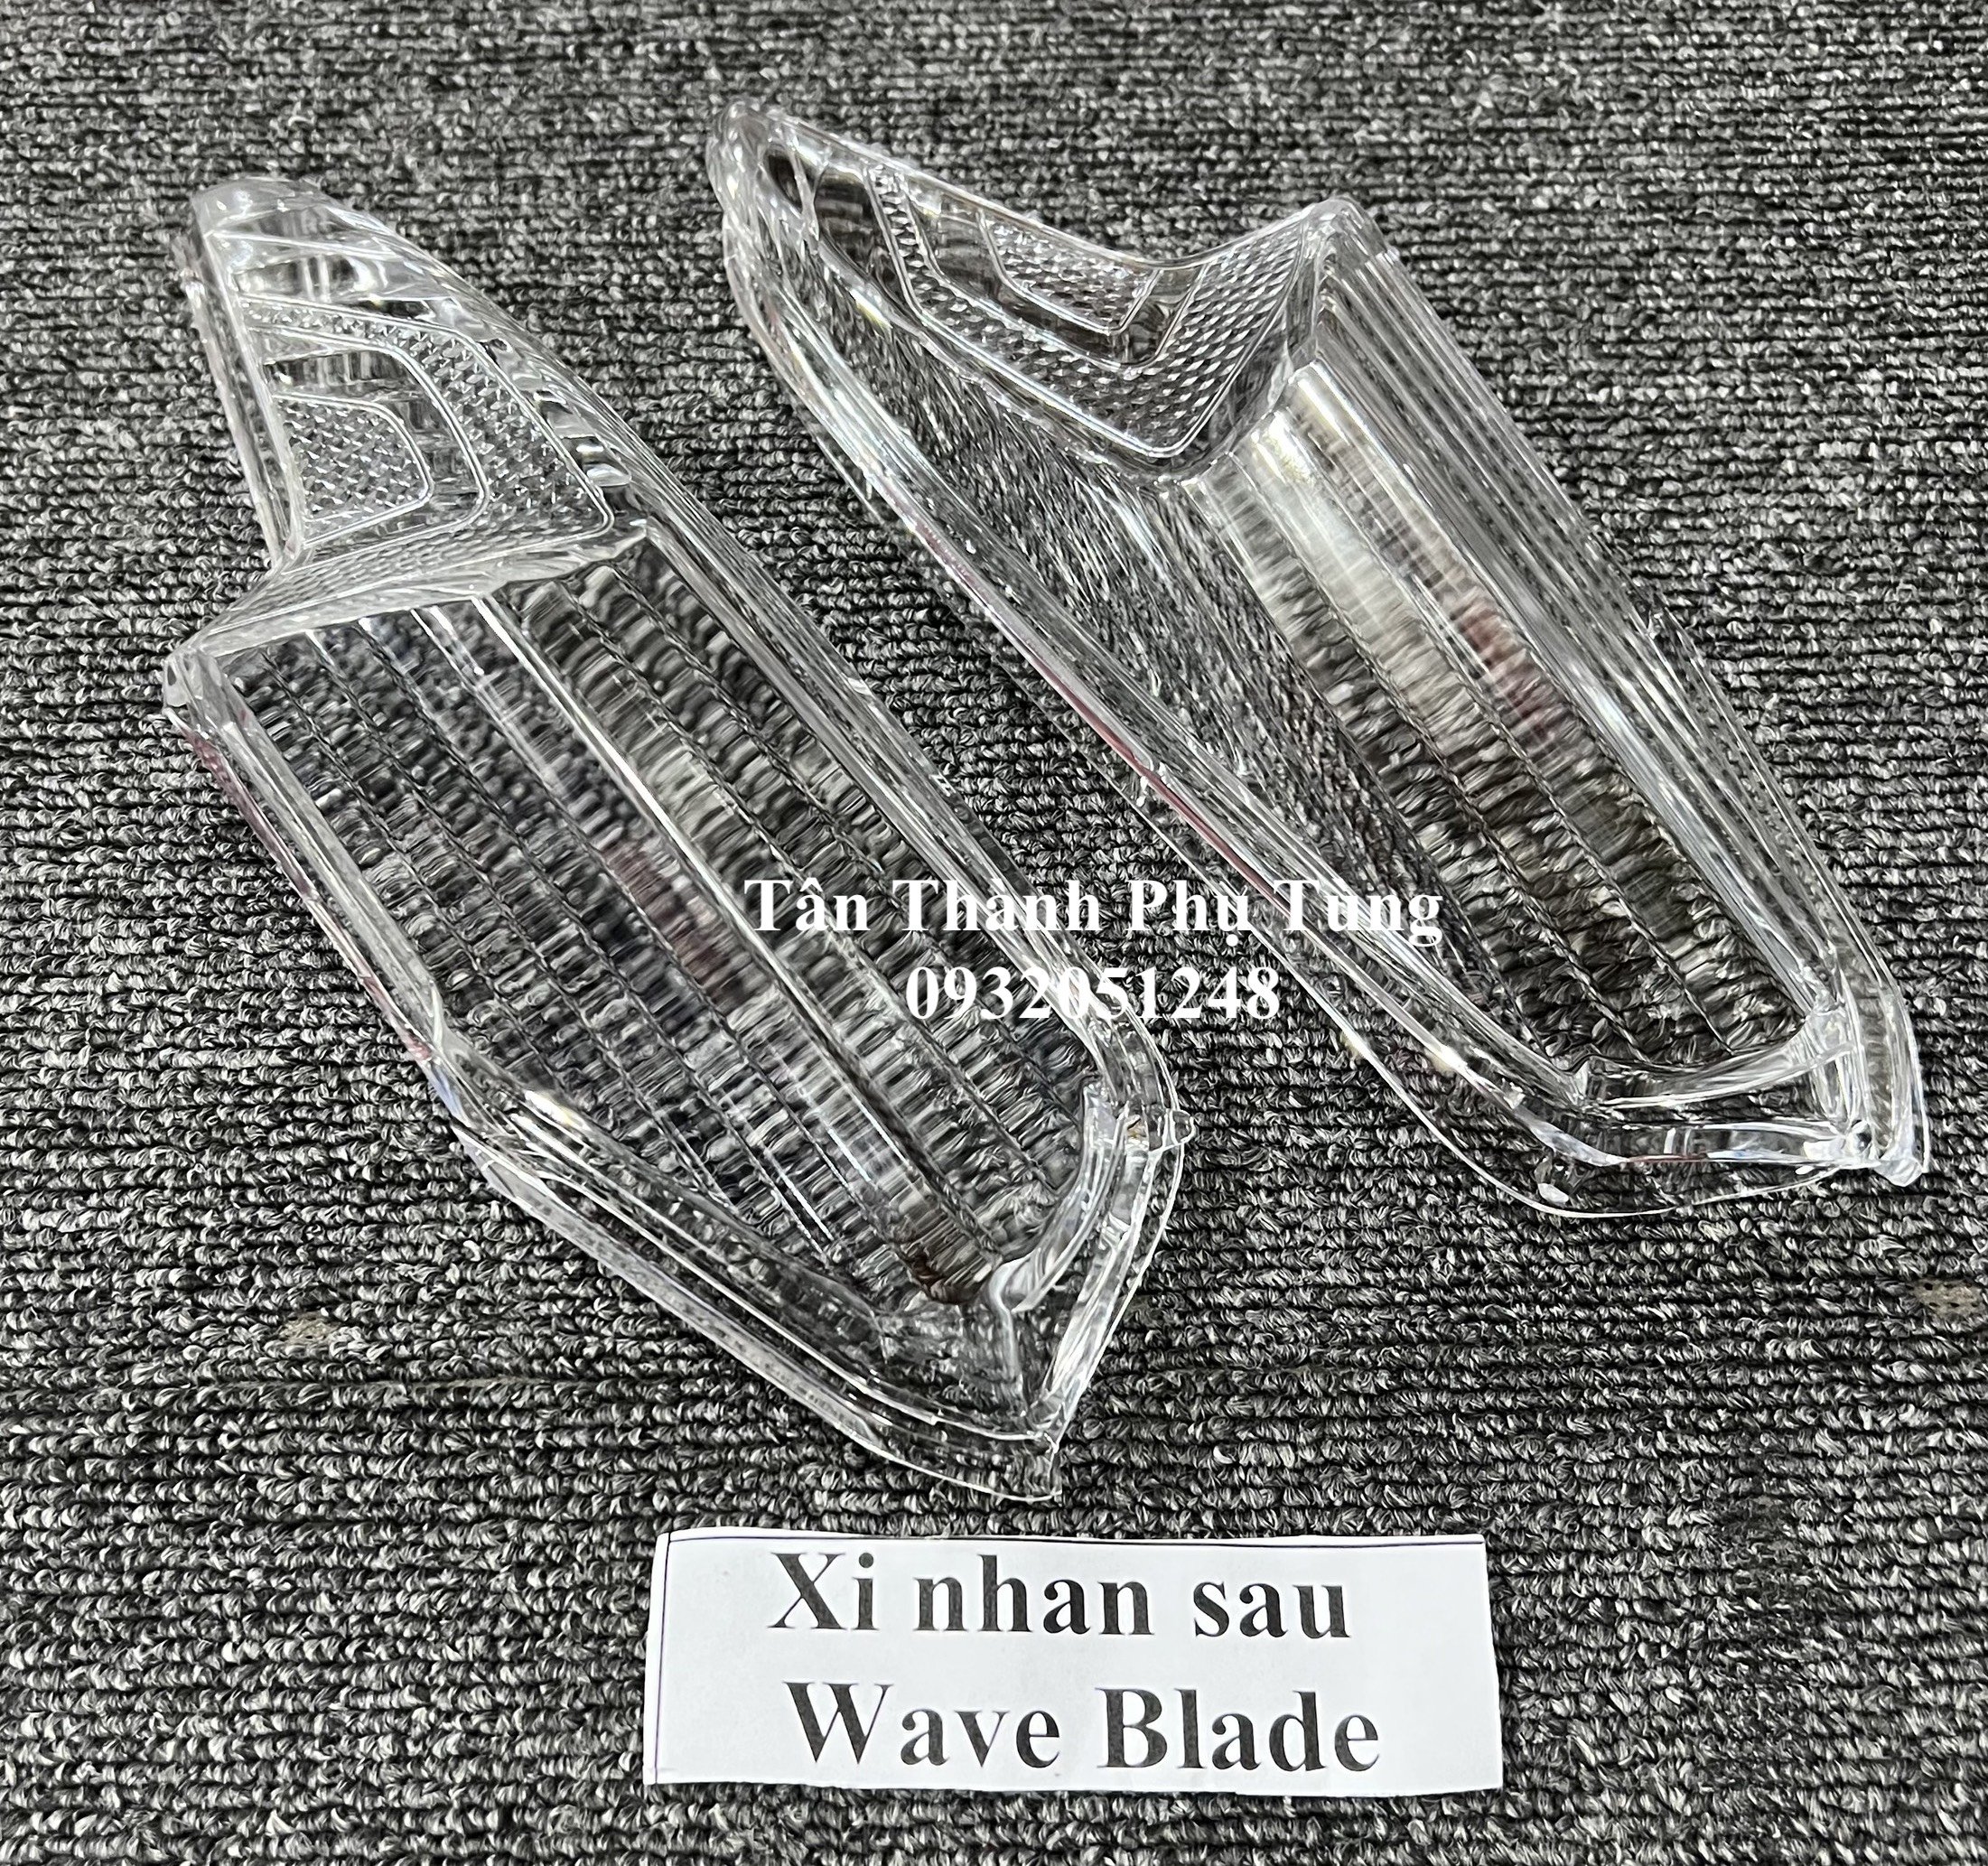 Xi nhan sau dành cho Wave Blade - 1 cặp trái phải